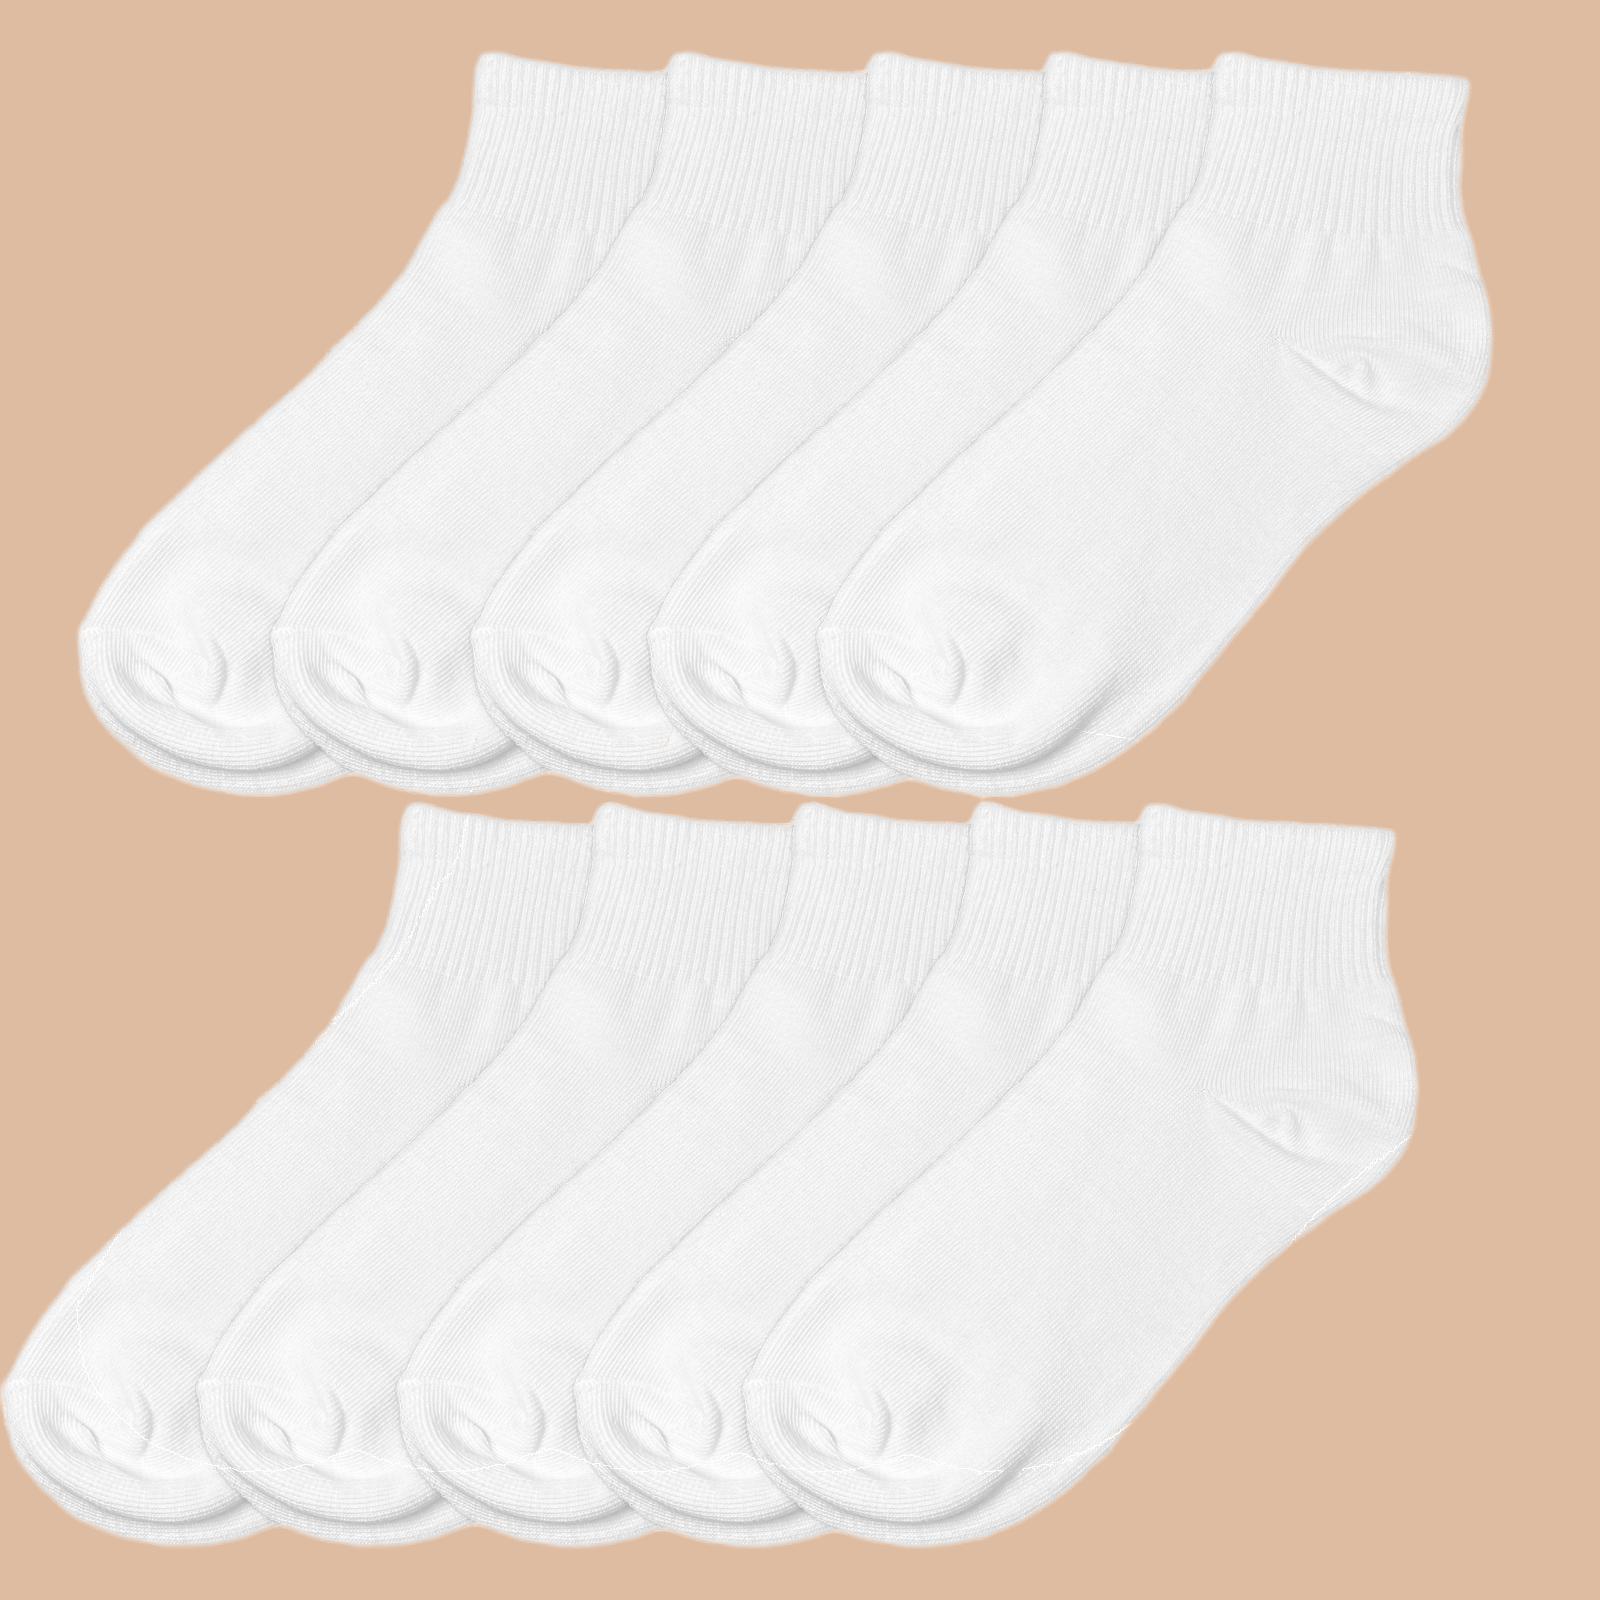 

10 Pairs Women's White Sports Socks